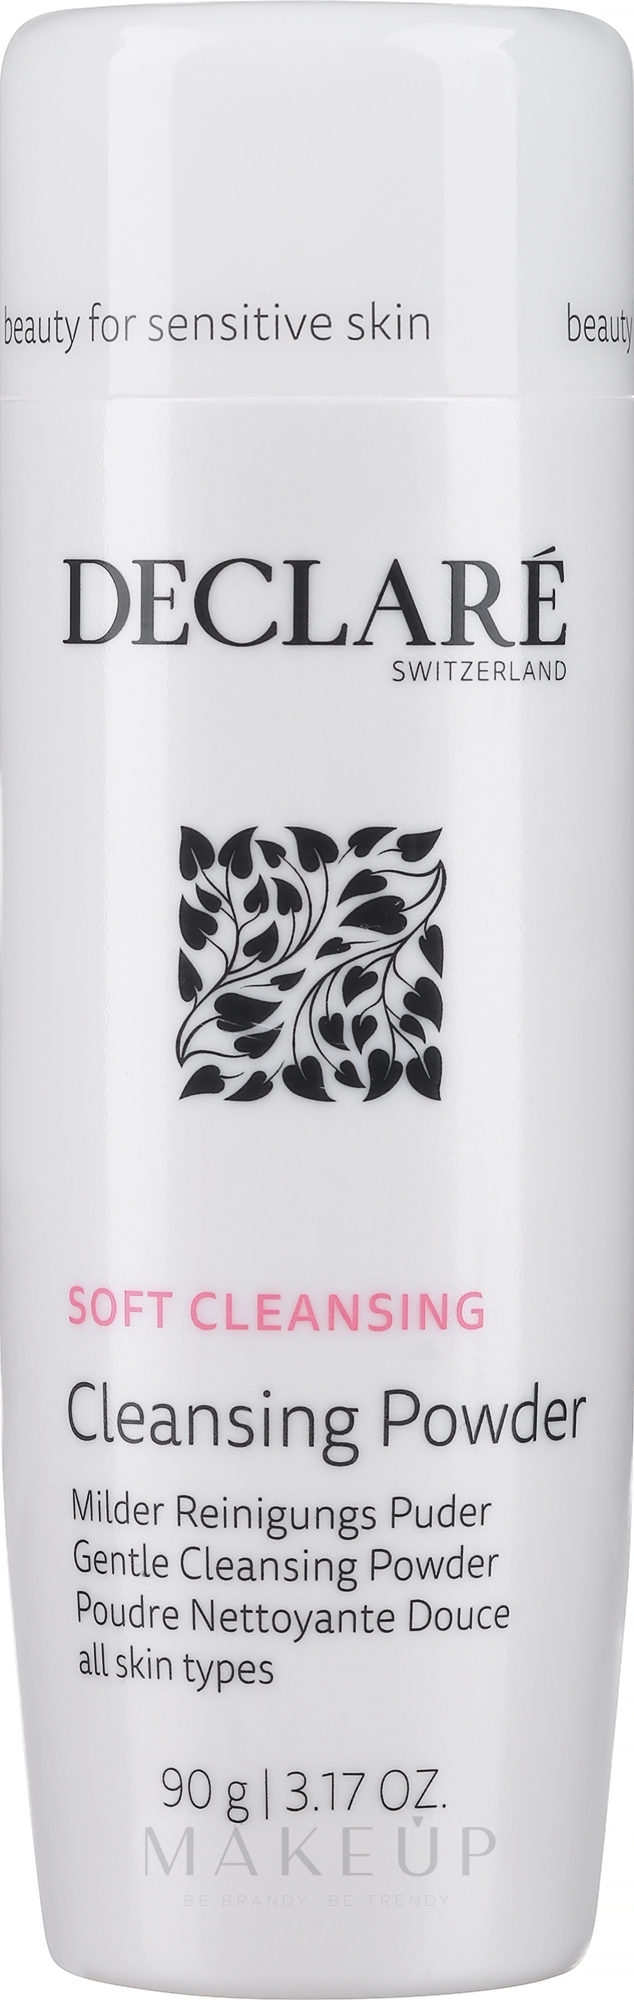 Declare Gentle Cleansing Powder - Milder Reinigungspuder für das Gesicht — Bild 90 g